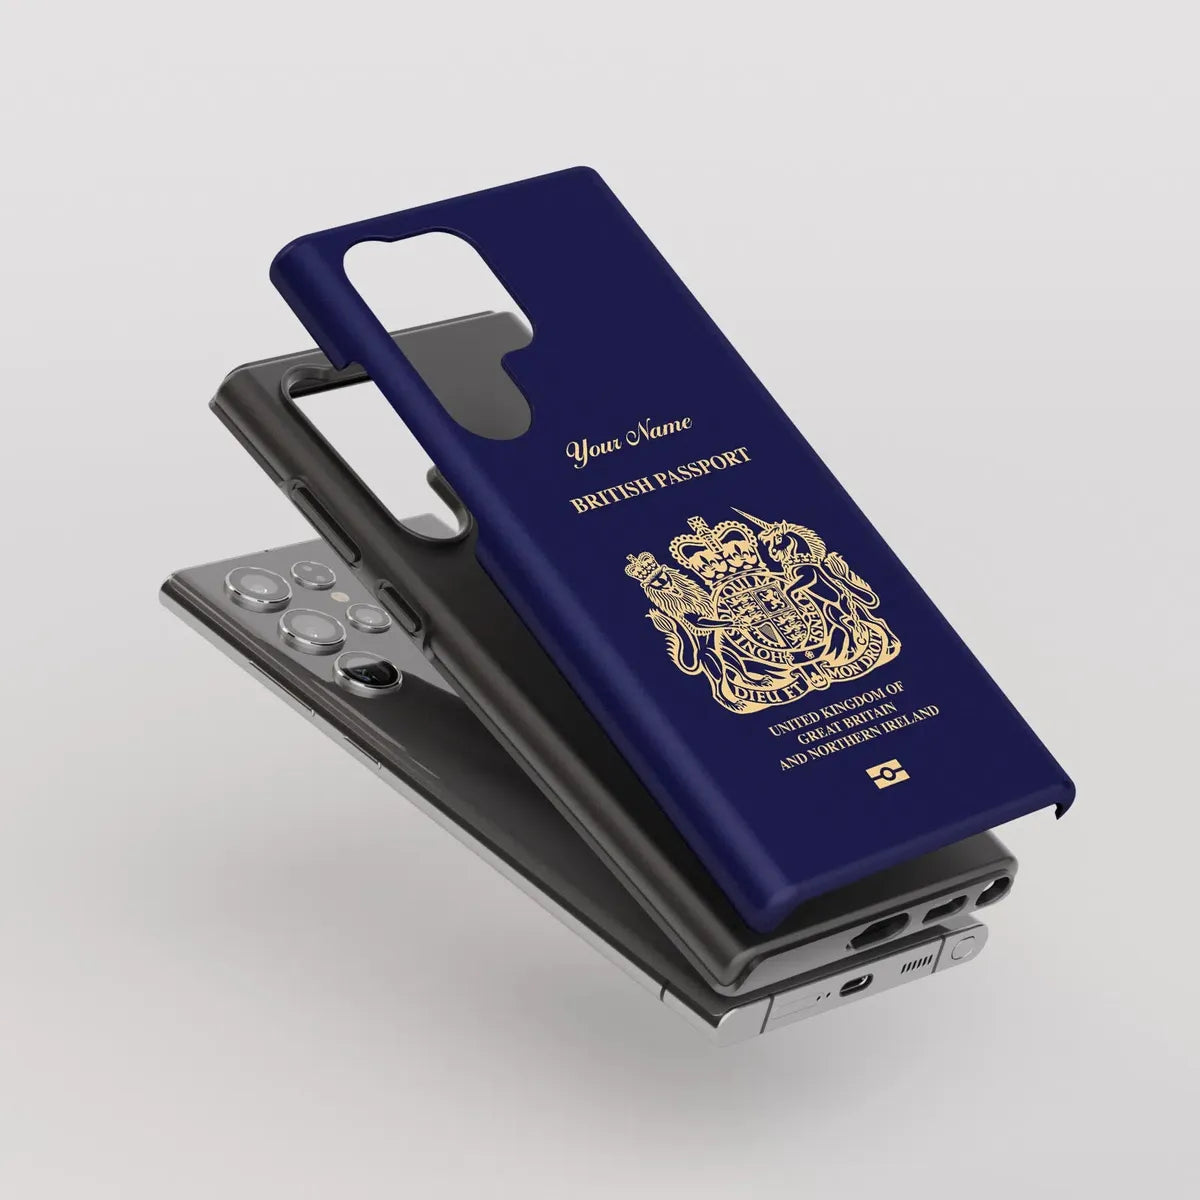 United Kingdom Passport - Samsung Galaxy S Case